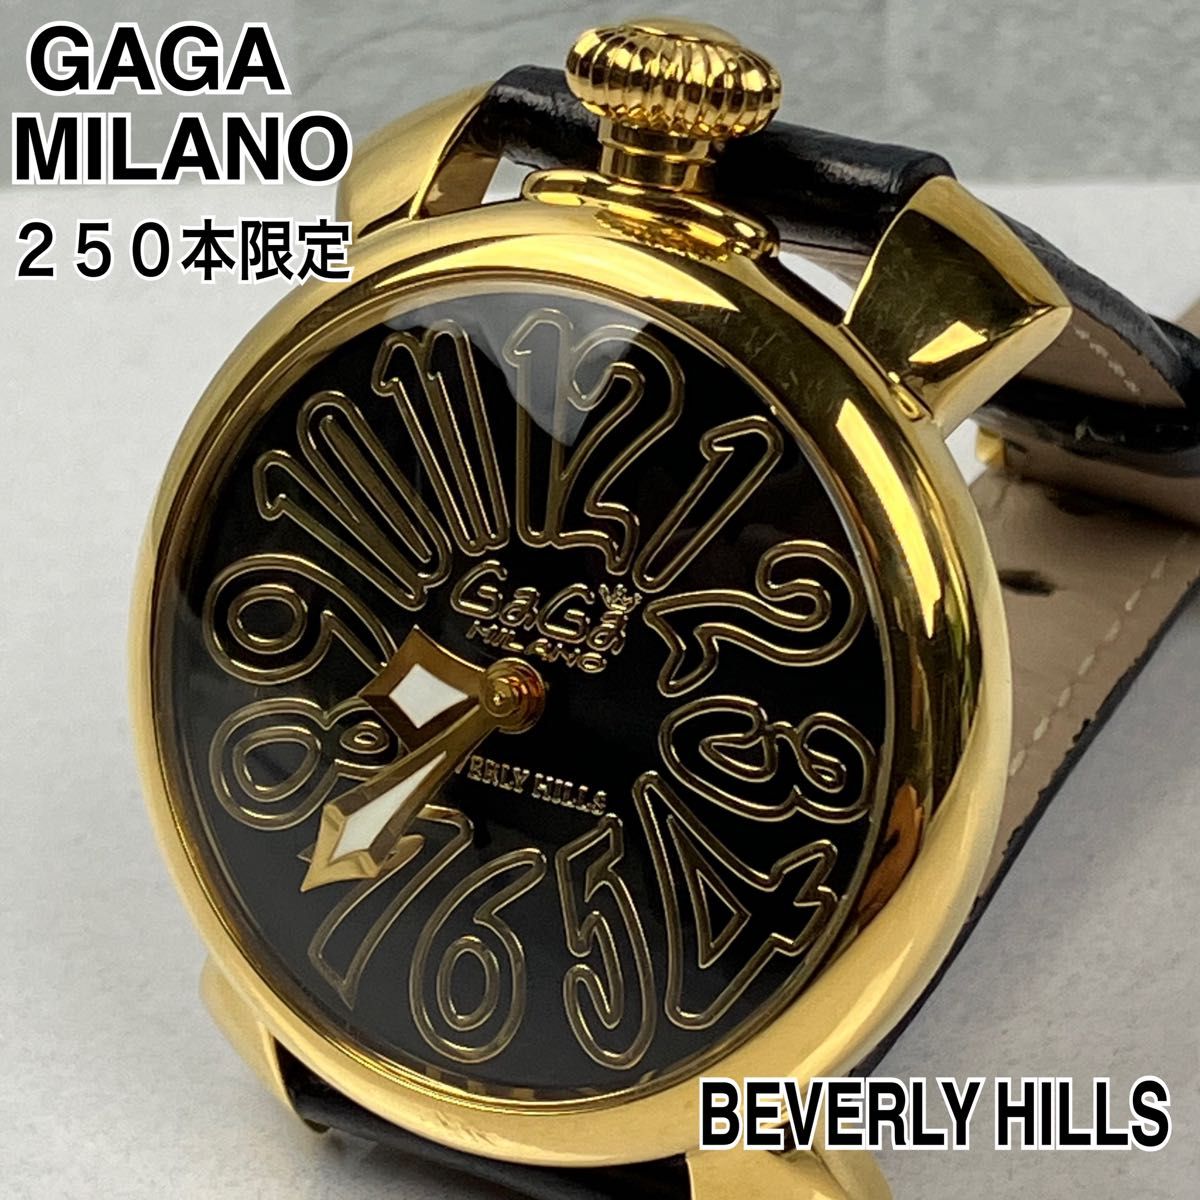 希少! GaGaMILANO ガガミラノ マヌアーレ40 腕時計 ウォッチ ビバリーヒルズ限定 250本限定 ゴールド ブラック